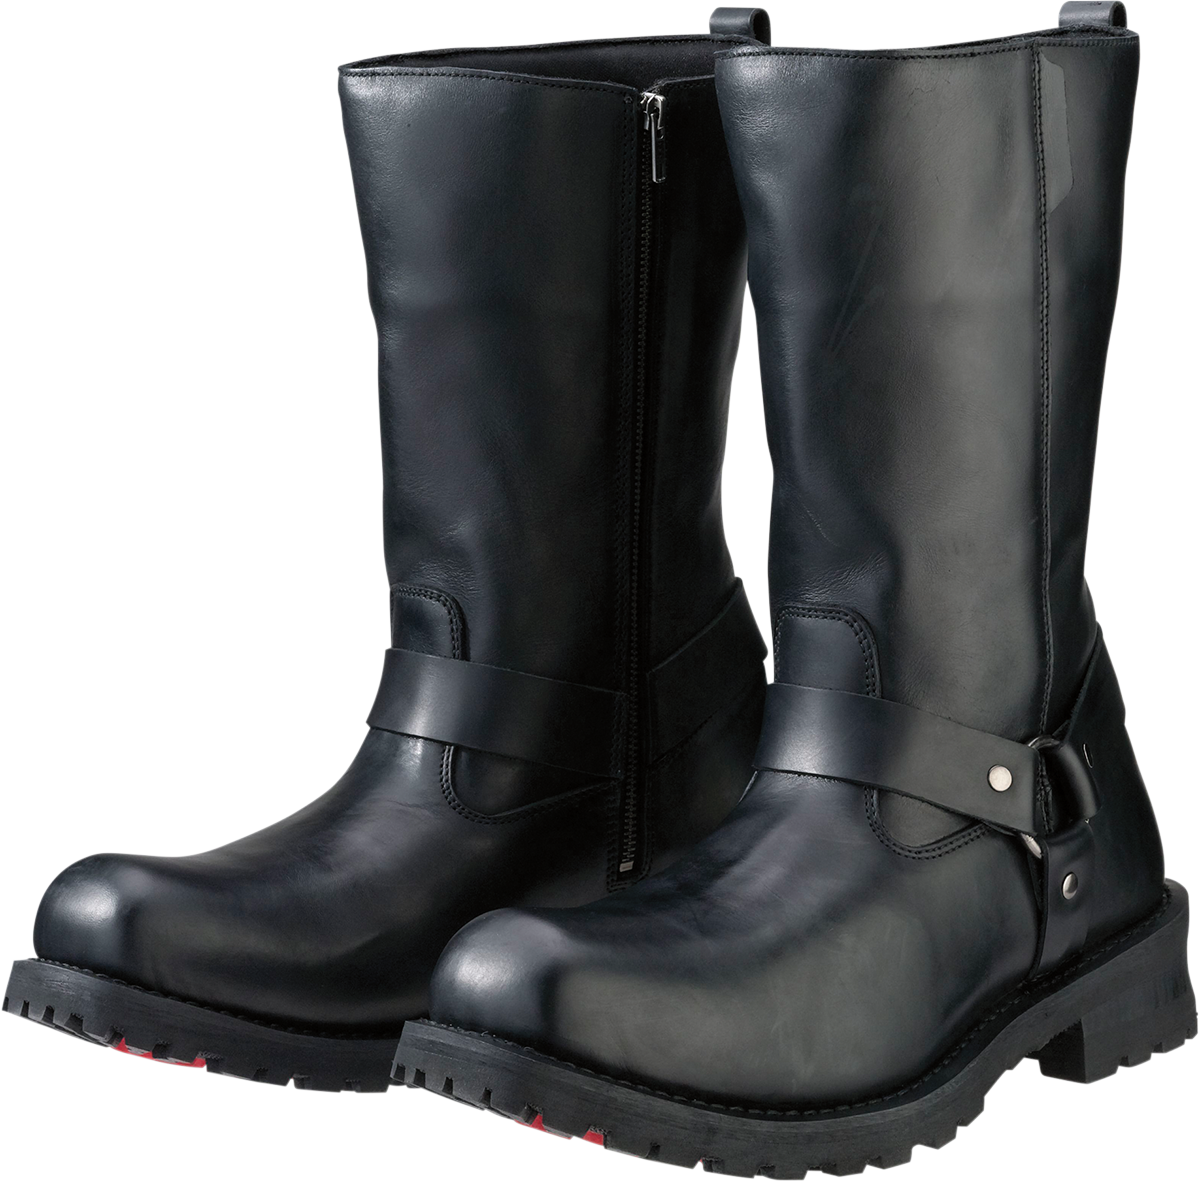 Z1R Riot Boots - Black - US 13 3403-0762